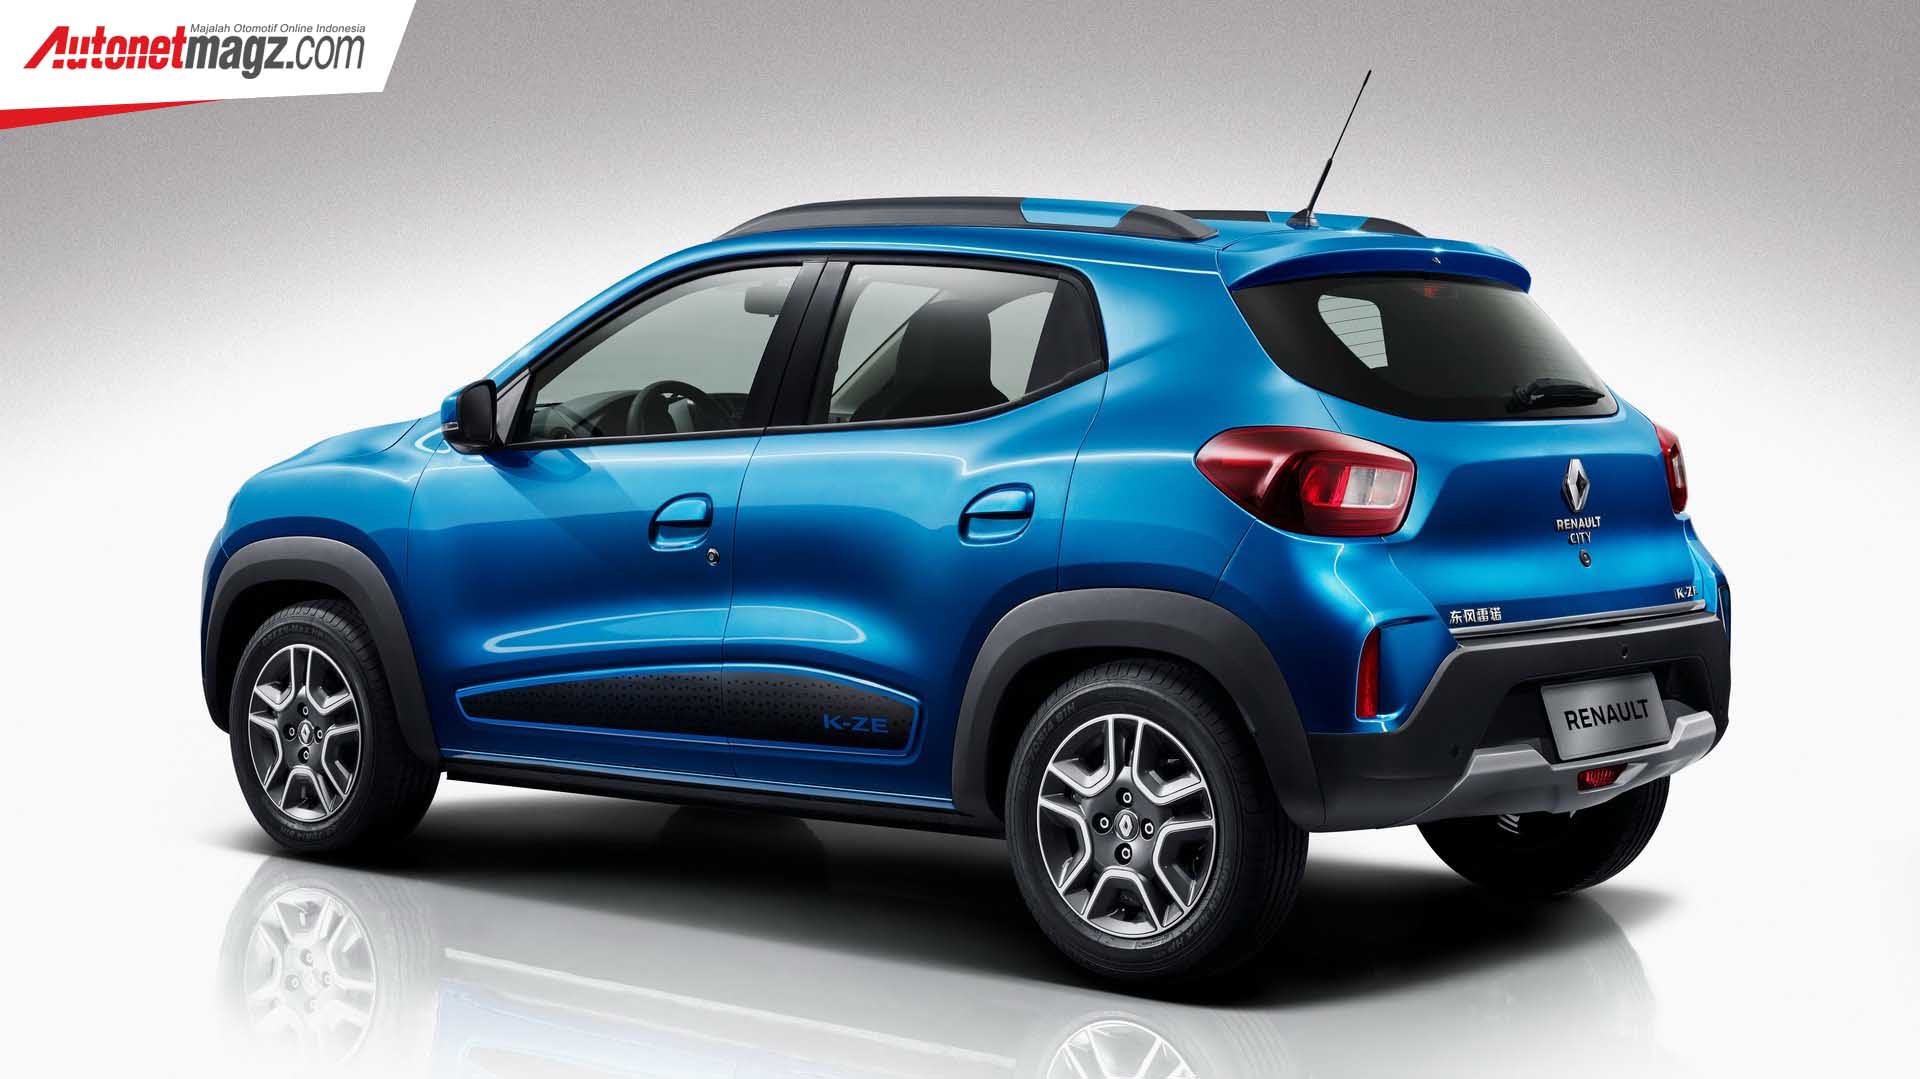 Berita, Renault City K-ZE EV belakang: Renault City K-ZE : Renault Kwid Versi EV Yang dirilis di China